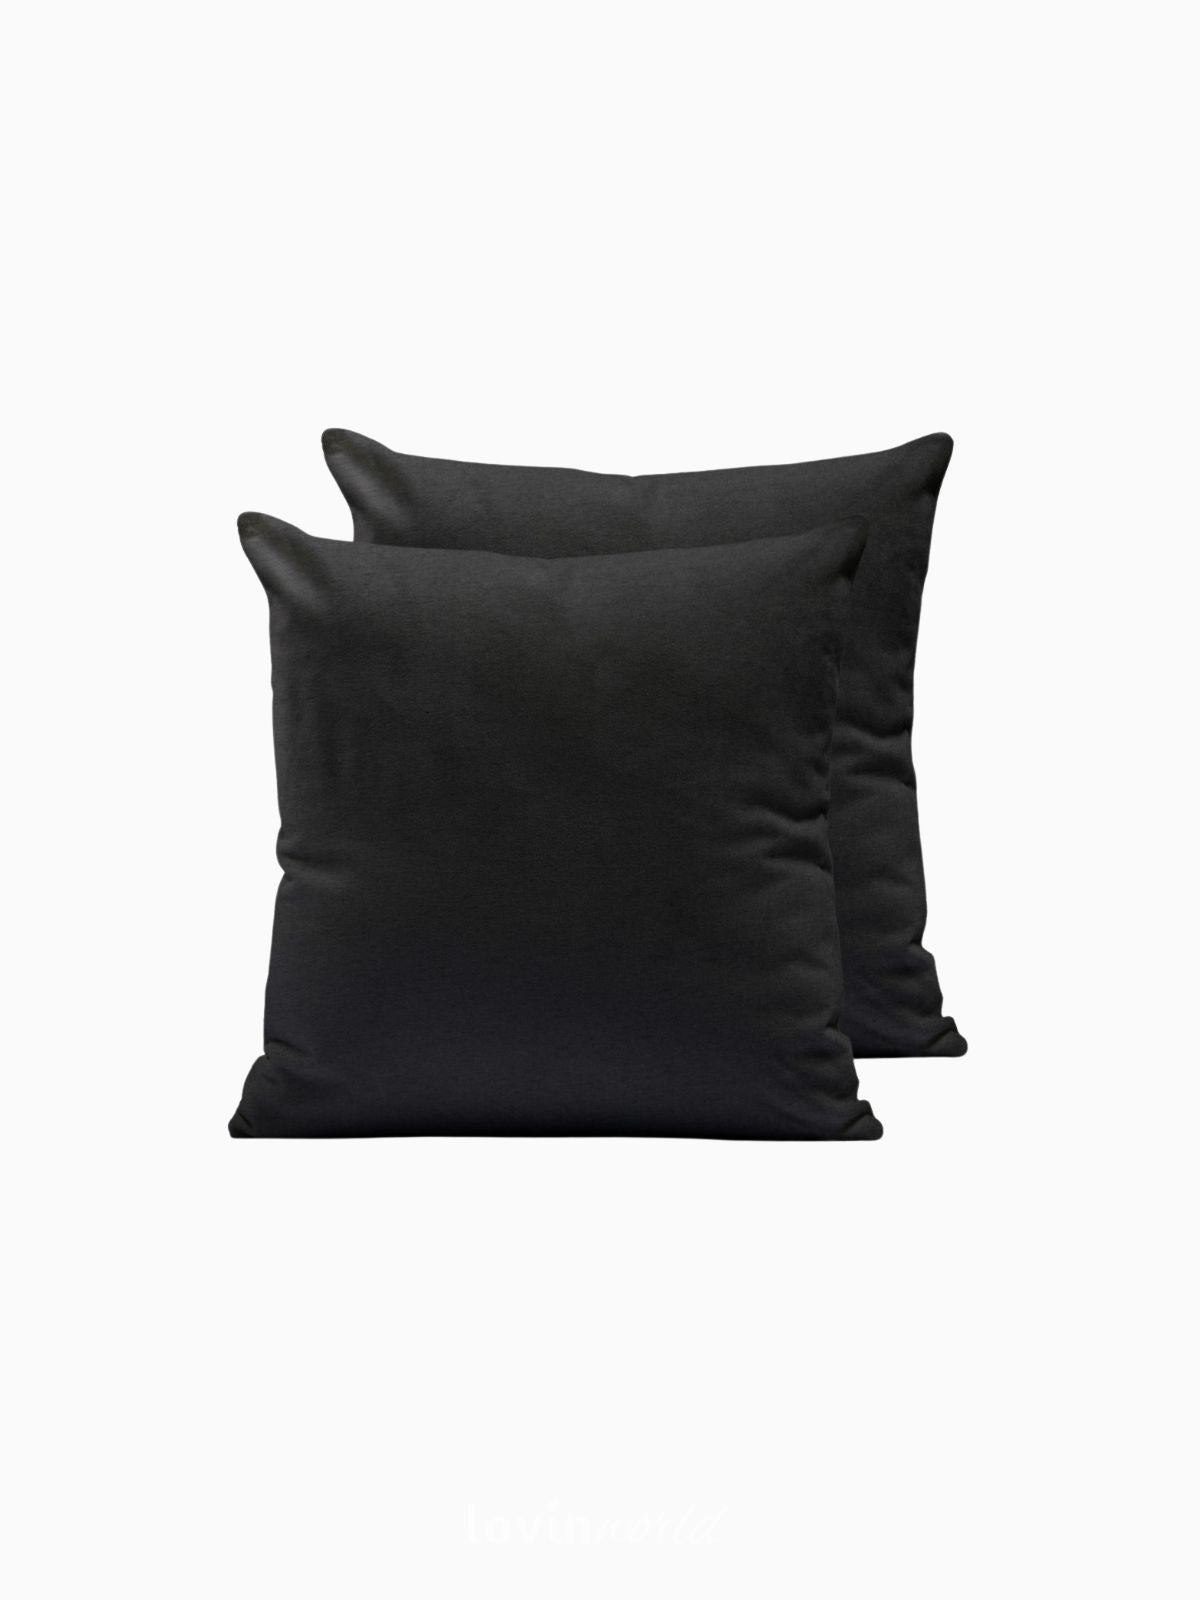 2 Federe per cuscino Amber in colore nero 50x50 cm.-1